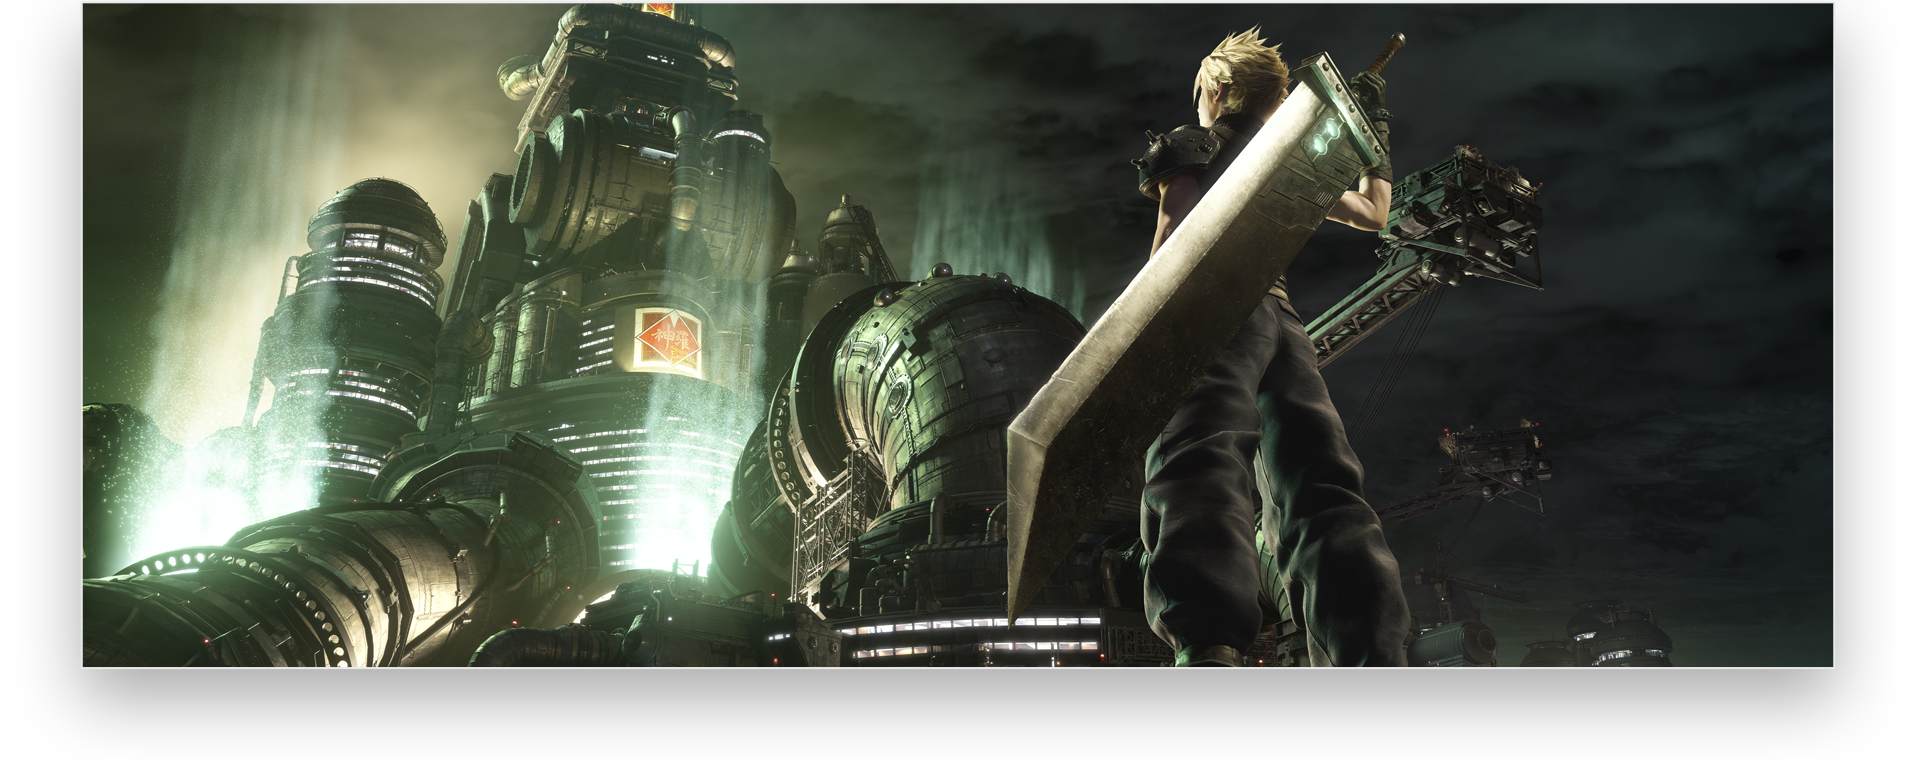 الصورة الفنية الأساسية للعبة Final Fantasy 7